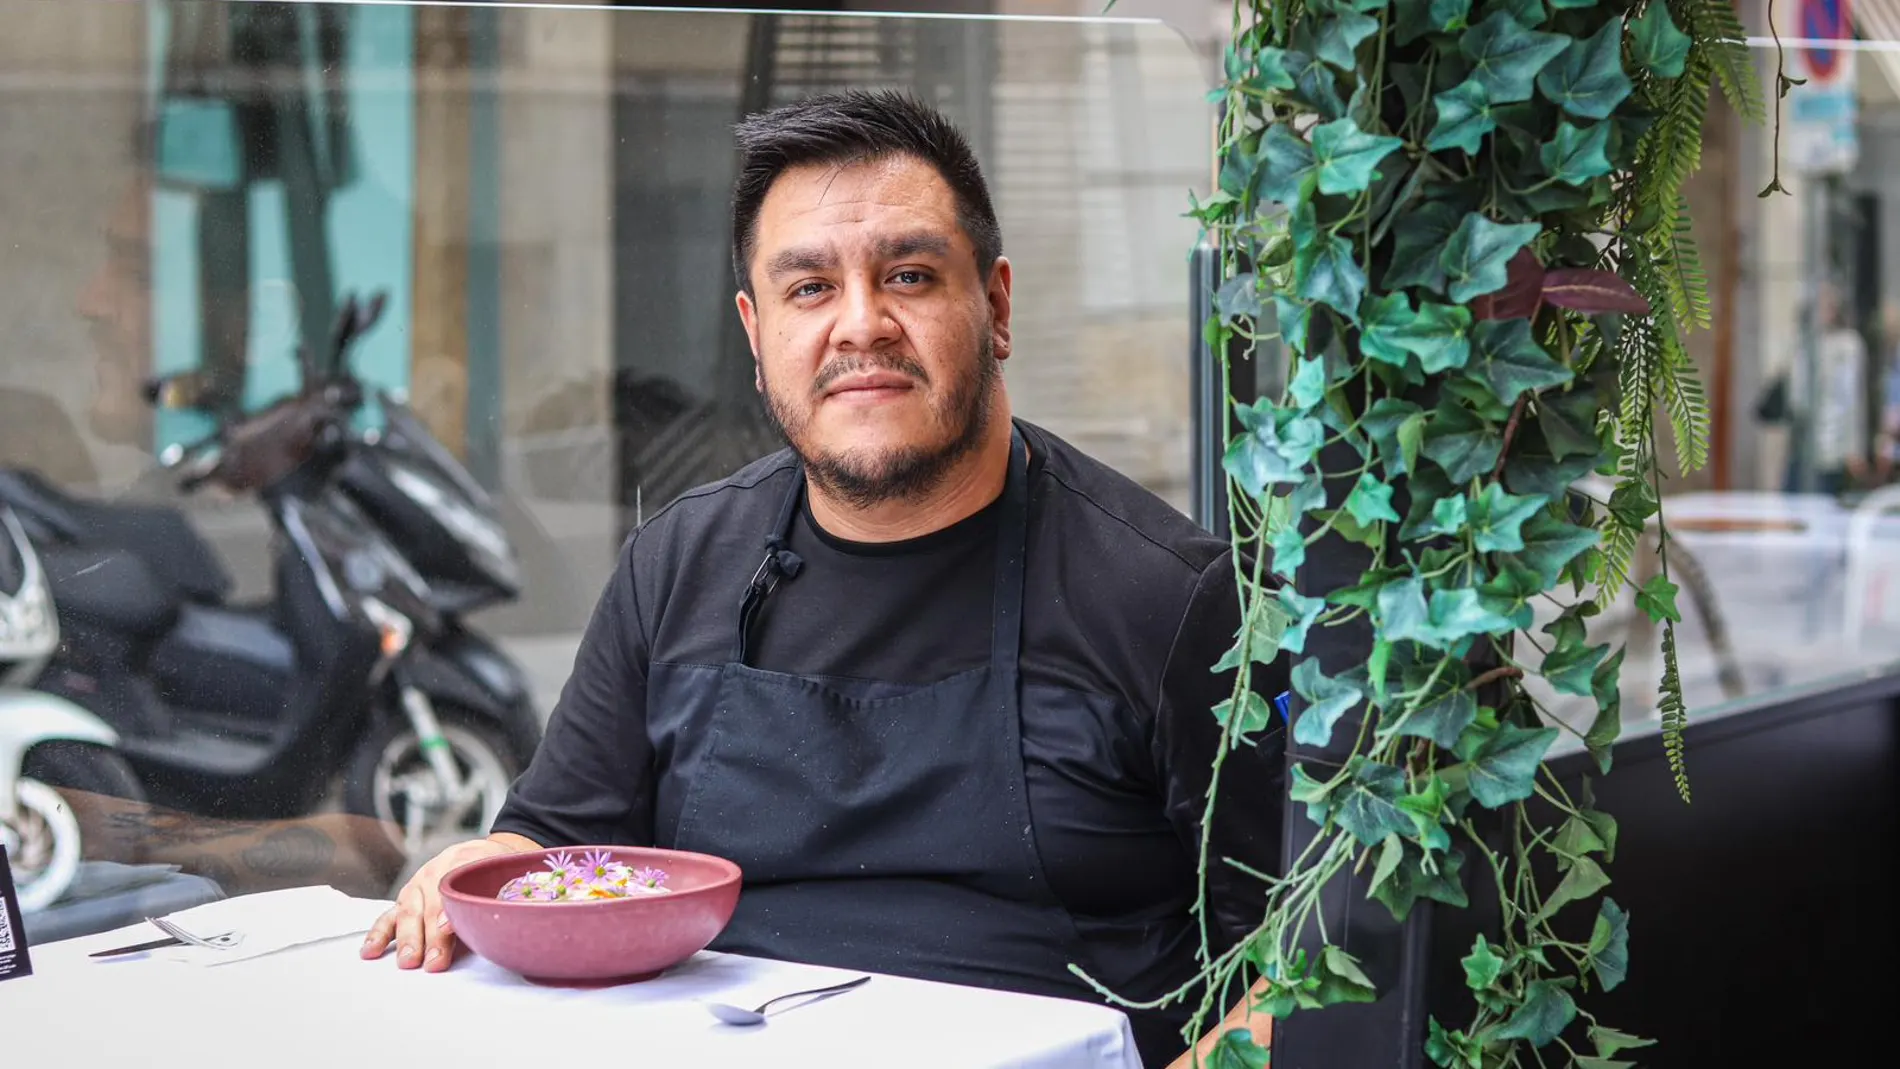 Jardiel Varela, chef de Tepic, espacio perfecto para celebrar el Día de Muertos